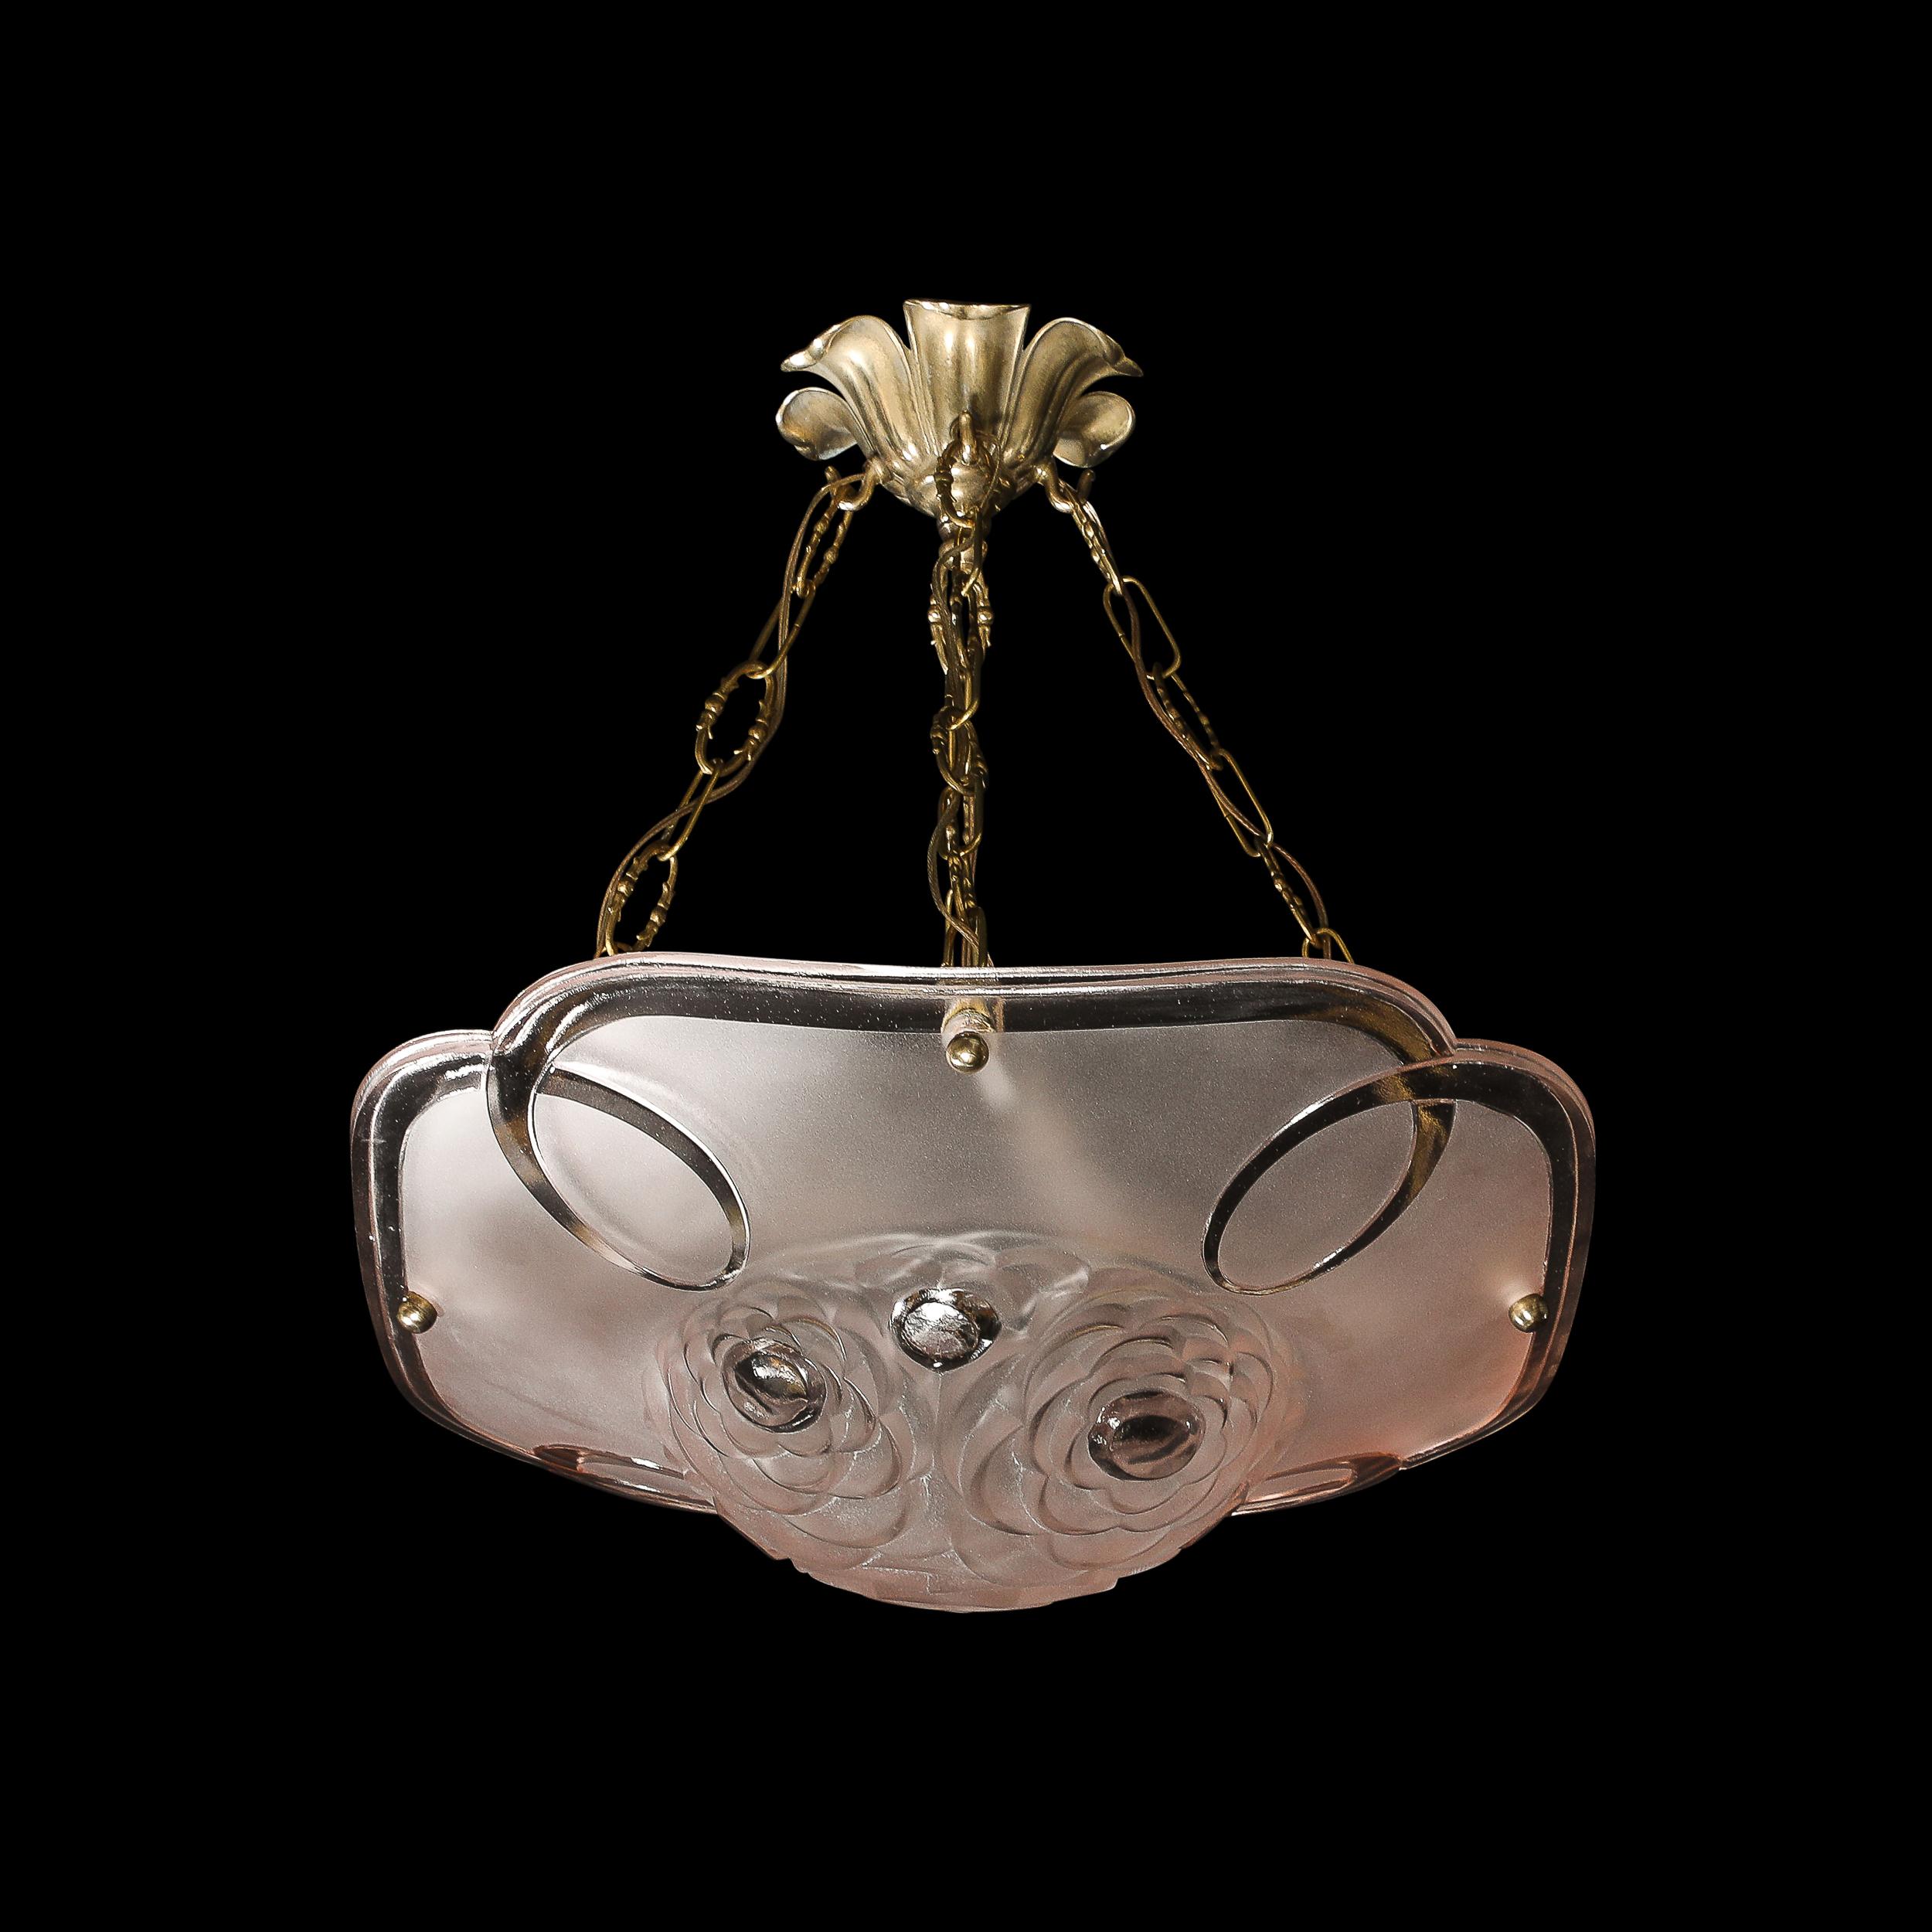 Cet élégant et sophistiqué lustre à pendentif en rose givrée Art Deco avec baldaquin et chaîne en laiton antique à fleurs cubistes stylisées est signé Degue et provient de France, vers 1930. Présente une forme géométrique unique composée de détails